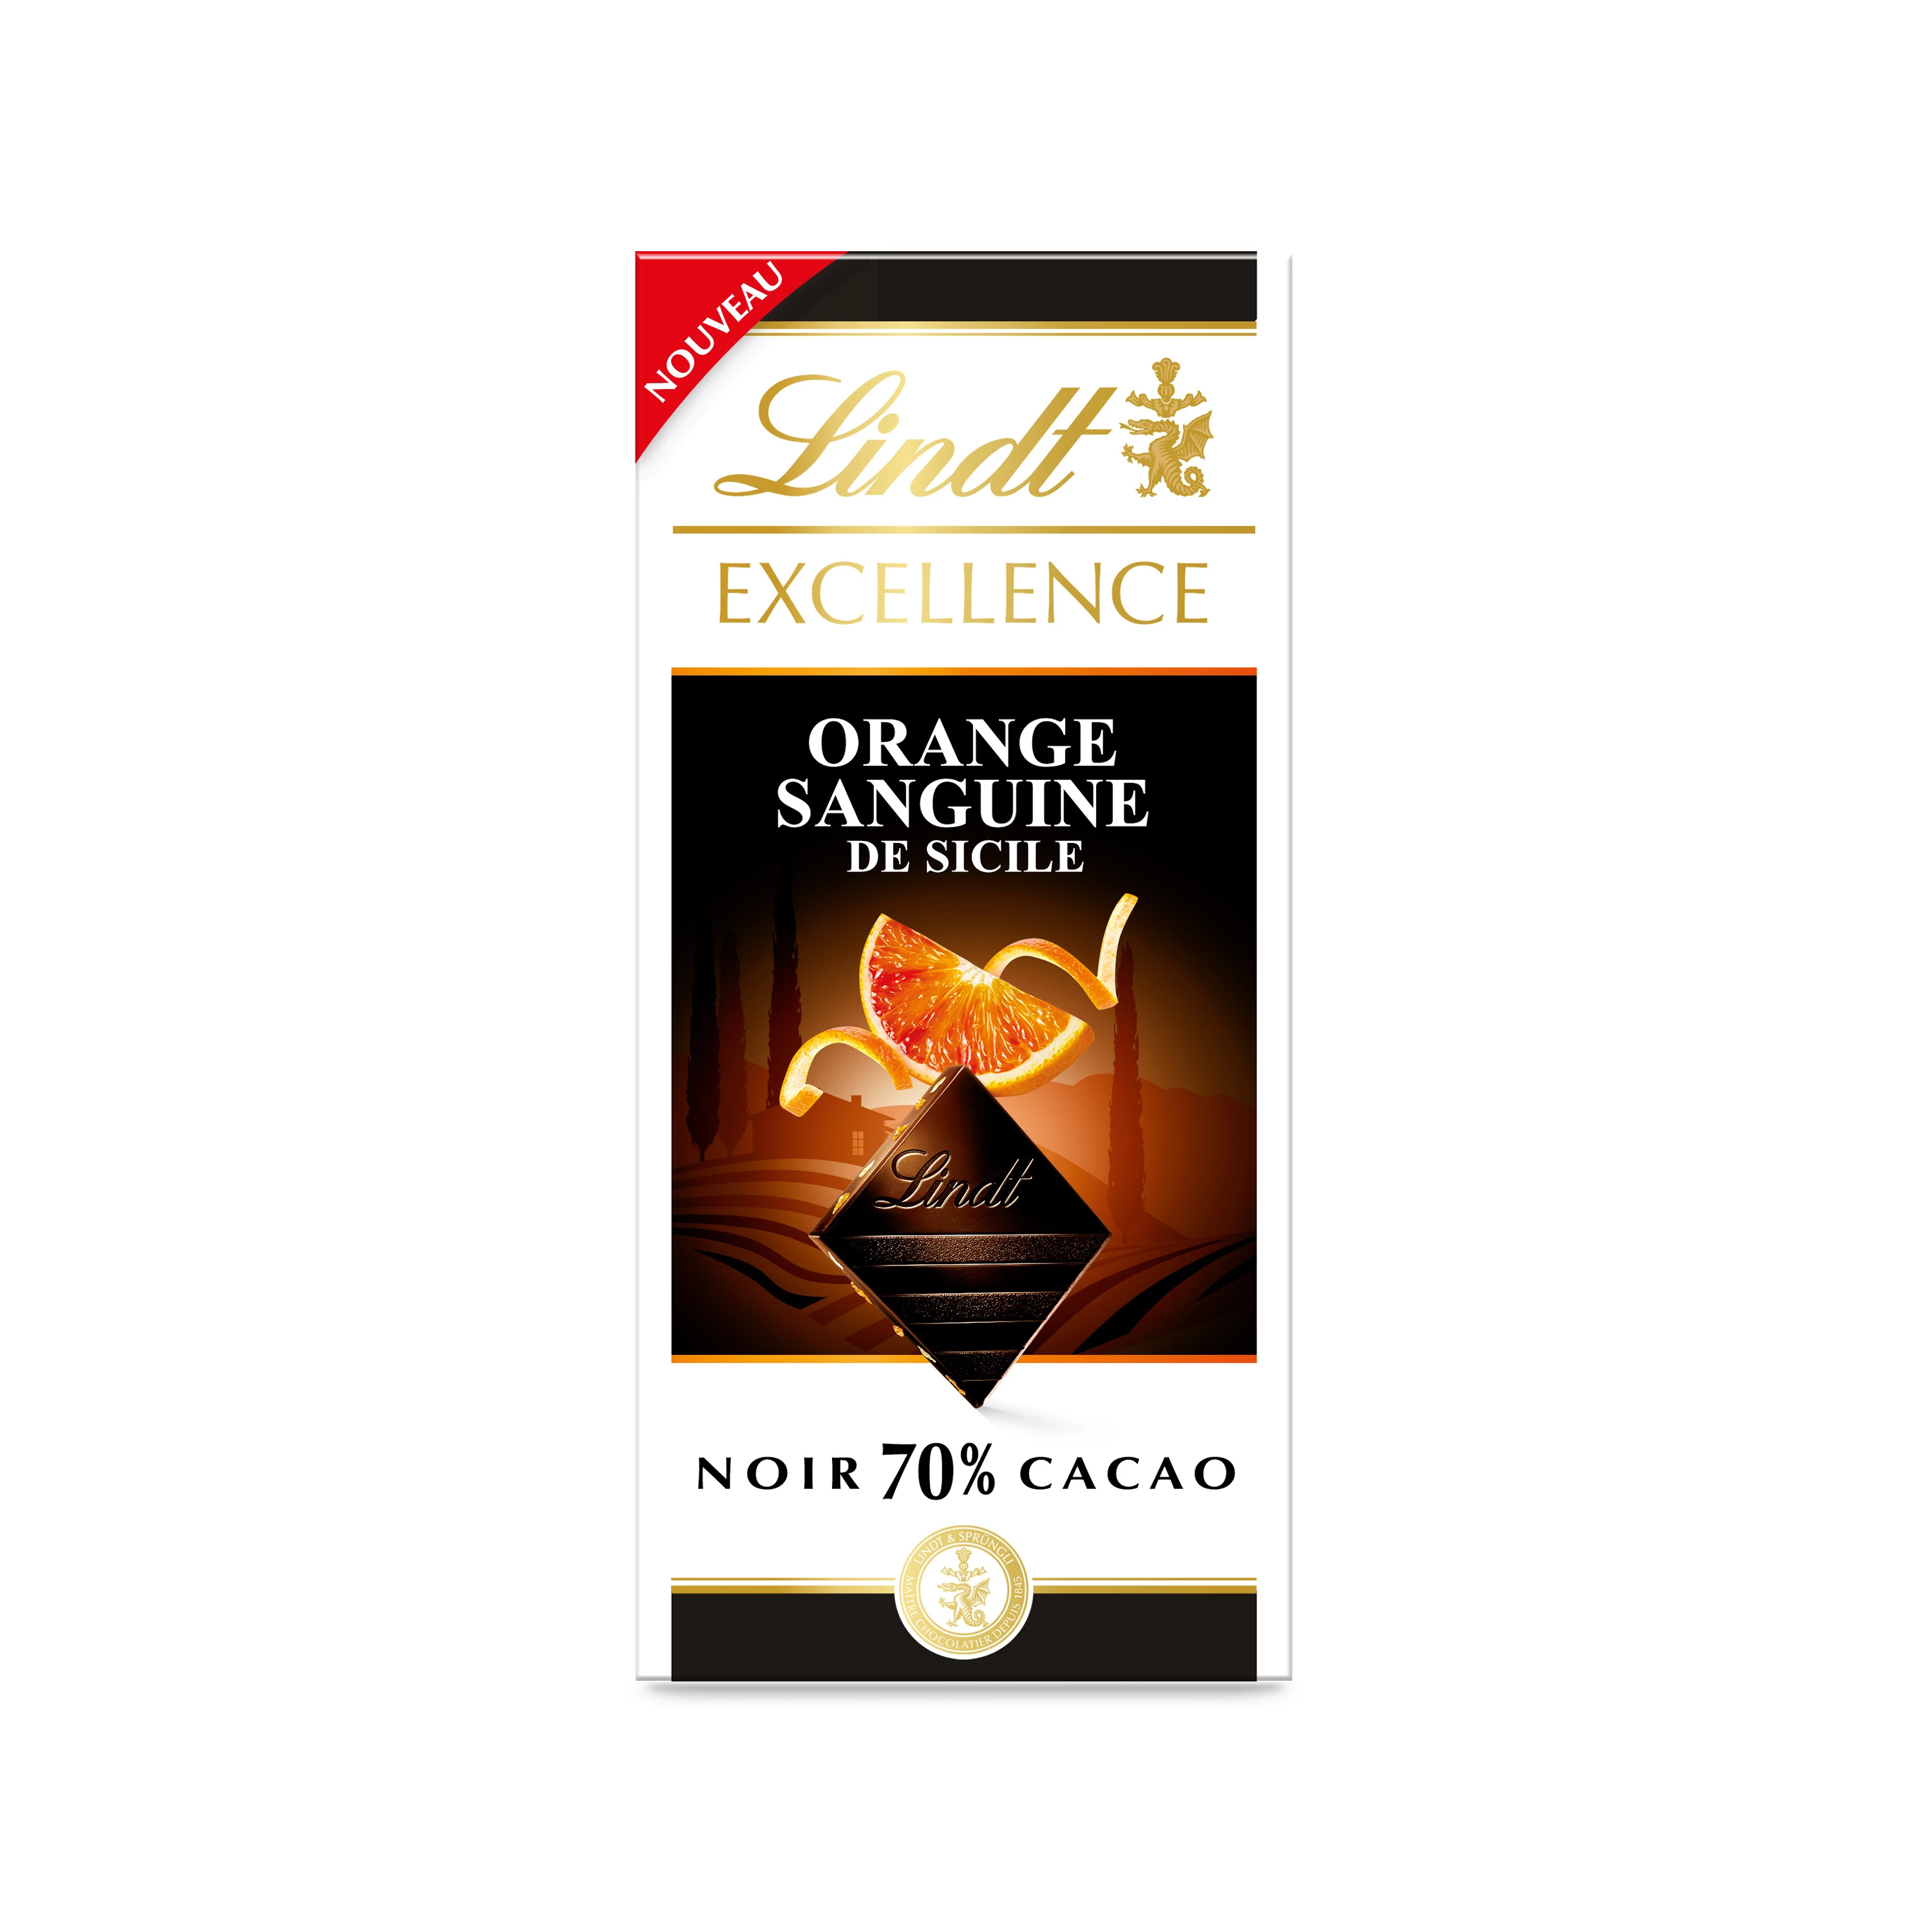 Excellence Noir 70% 西西里血橙可可片剂 100 克 - LINDT